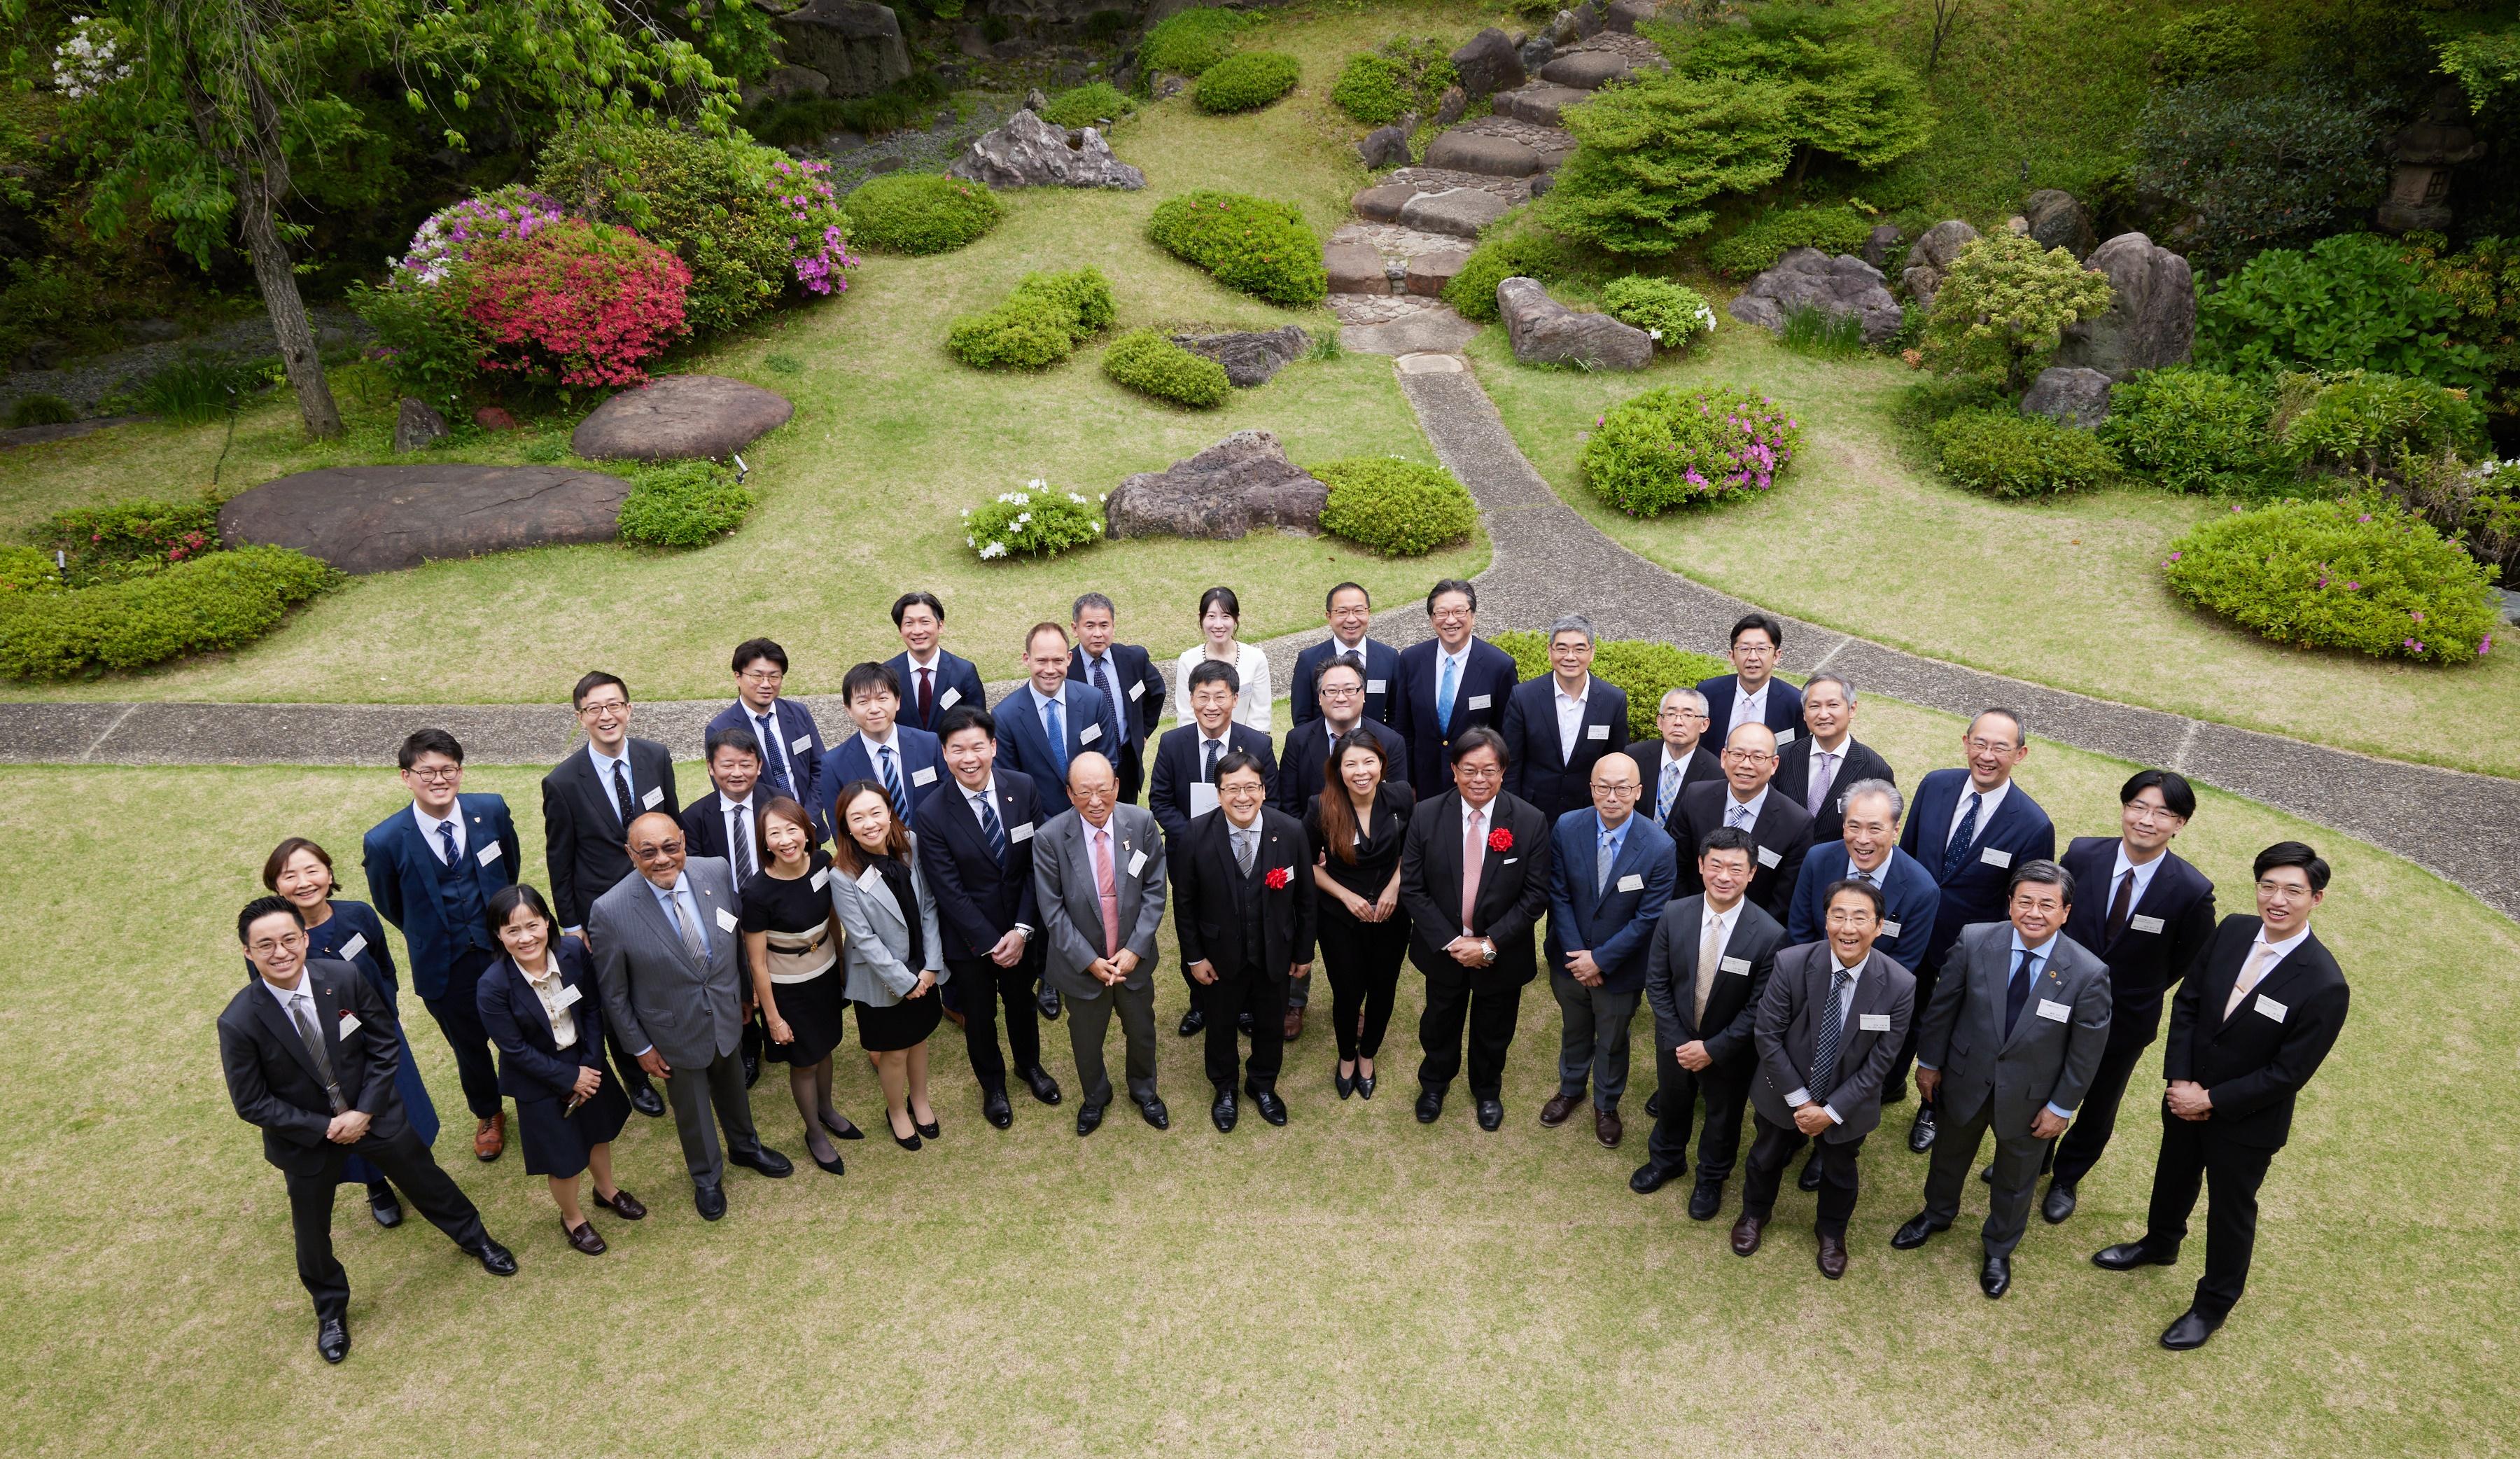 香港驻东京经济贸易办事处和香港律师会今日（四月二十六日）在日本东京合办午餐会。出席者包括来自日本的商界领袖、法律界人士，以及香港律师会的代表。
